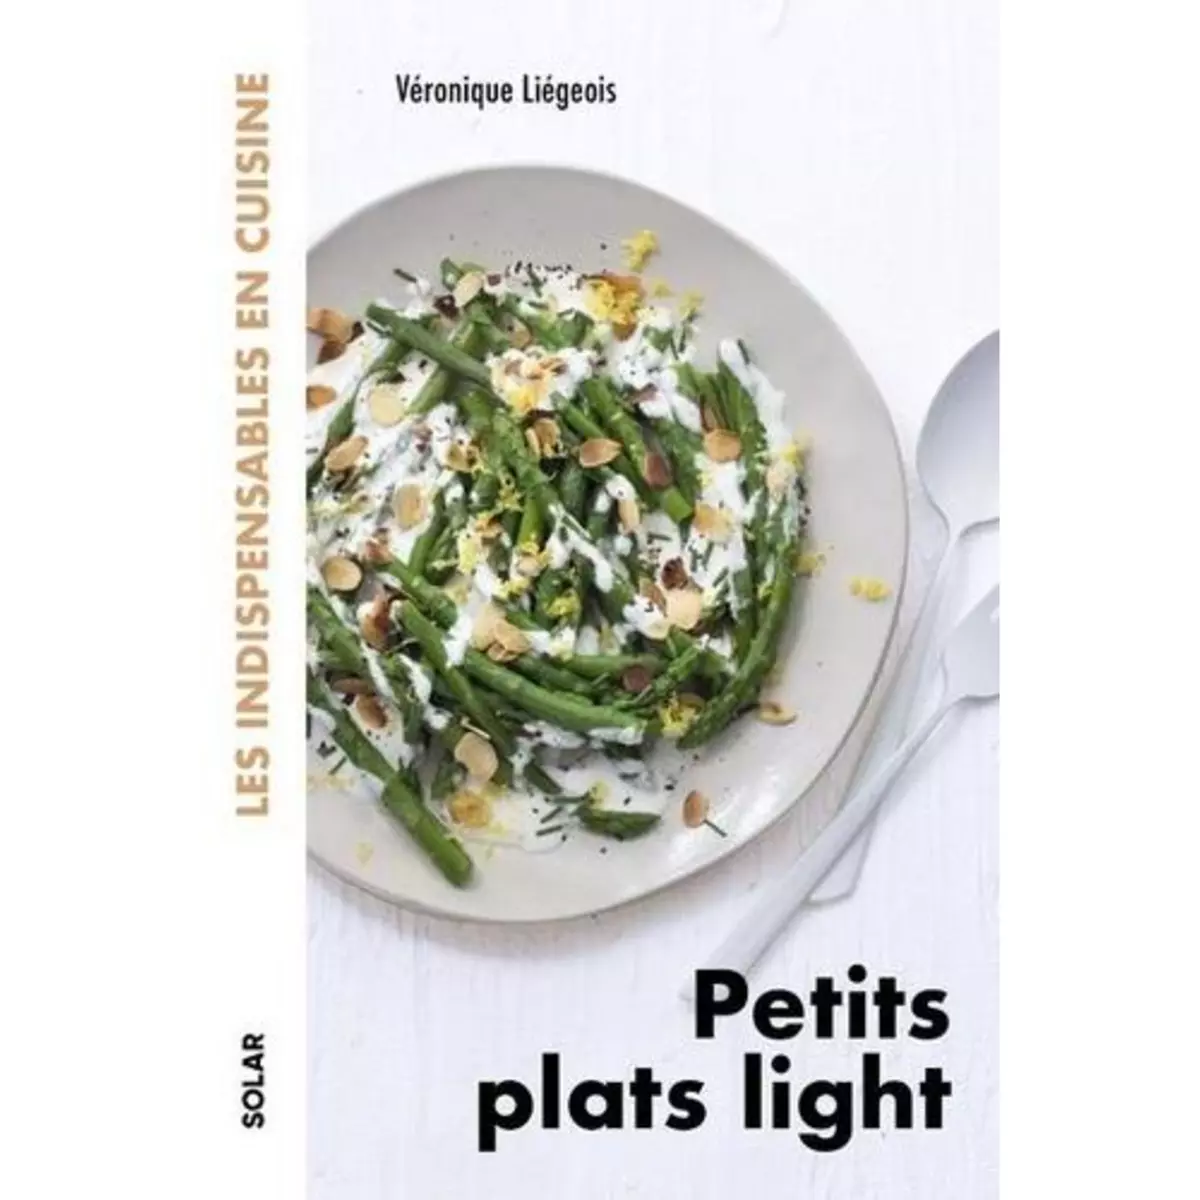  PETITS PLATS LIGHT, Liégois Véronique